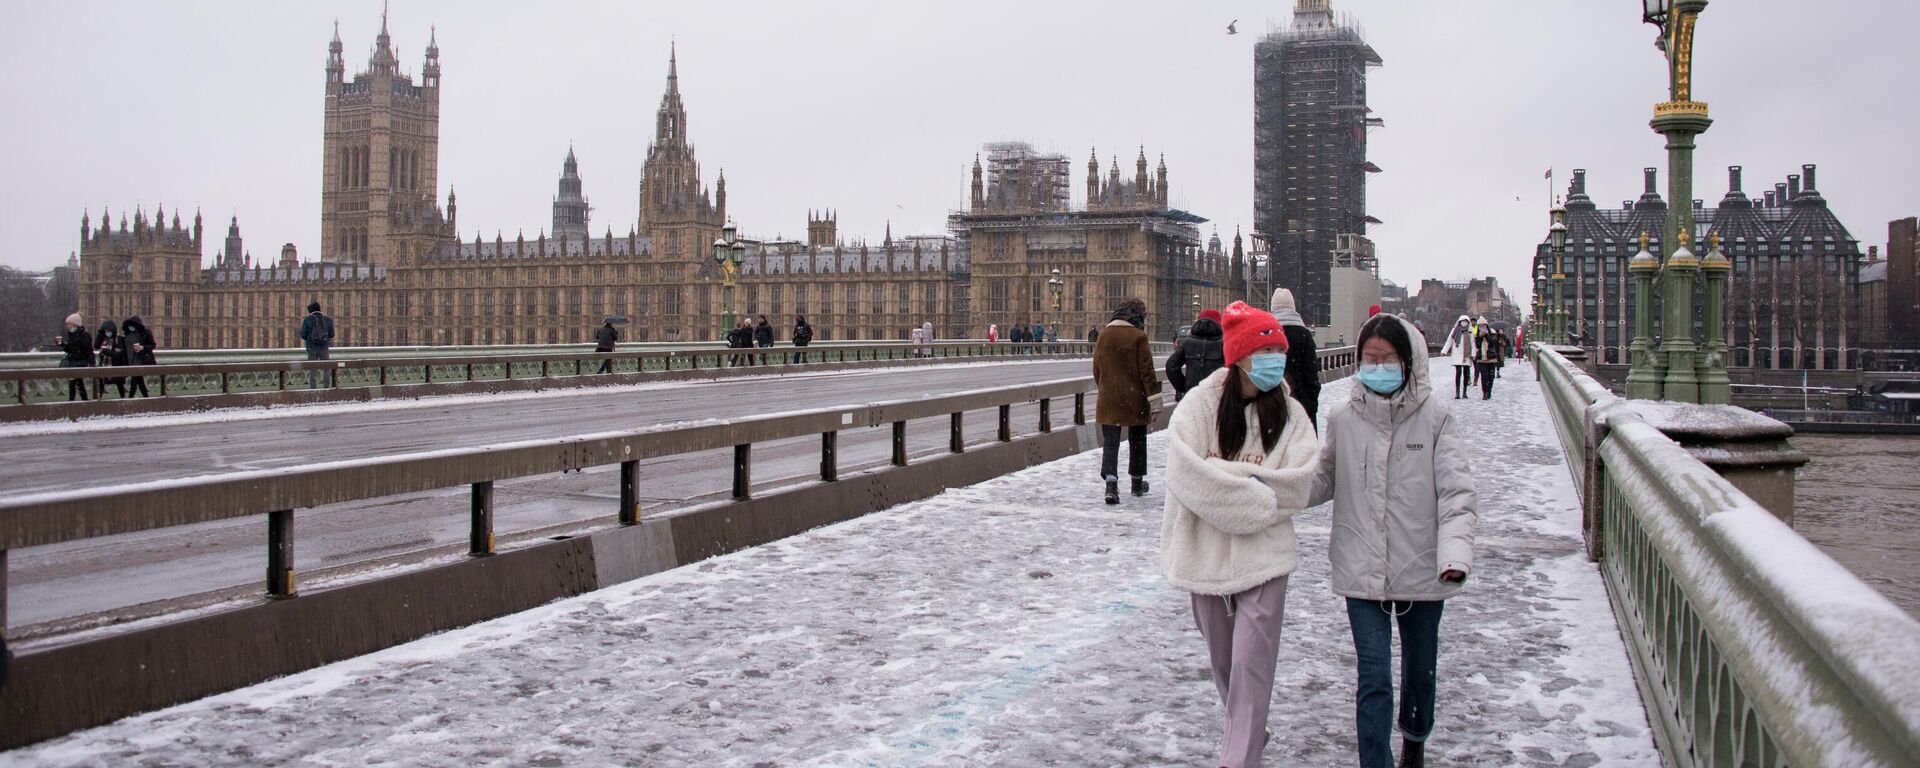 Люди во время снегопада в Лондоне - Sputnik Азербайджан, 1920, 03.12.2021